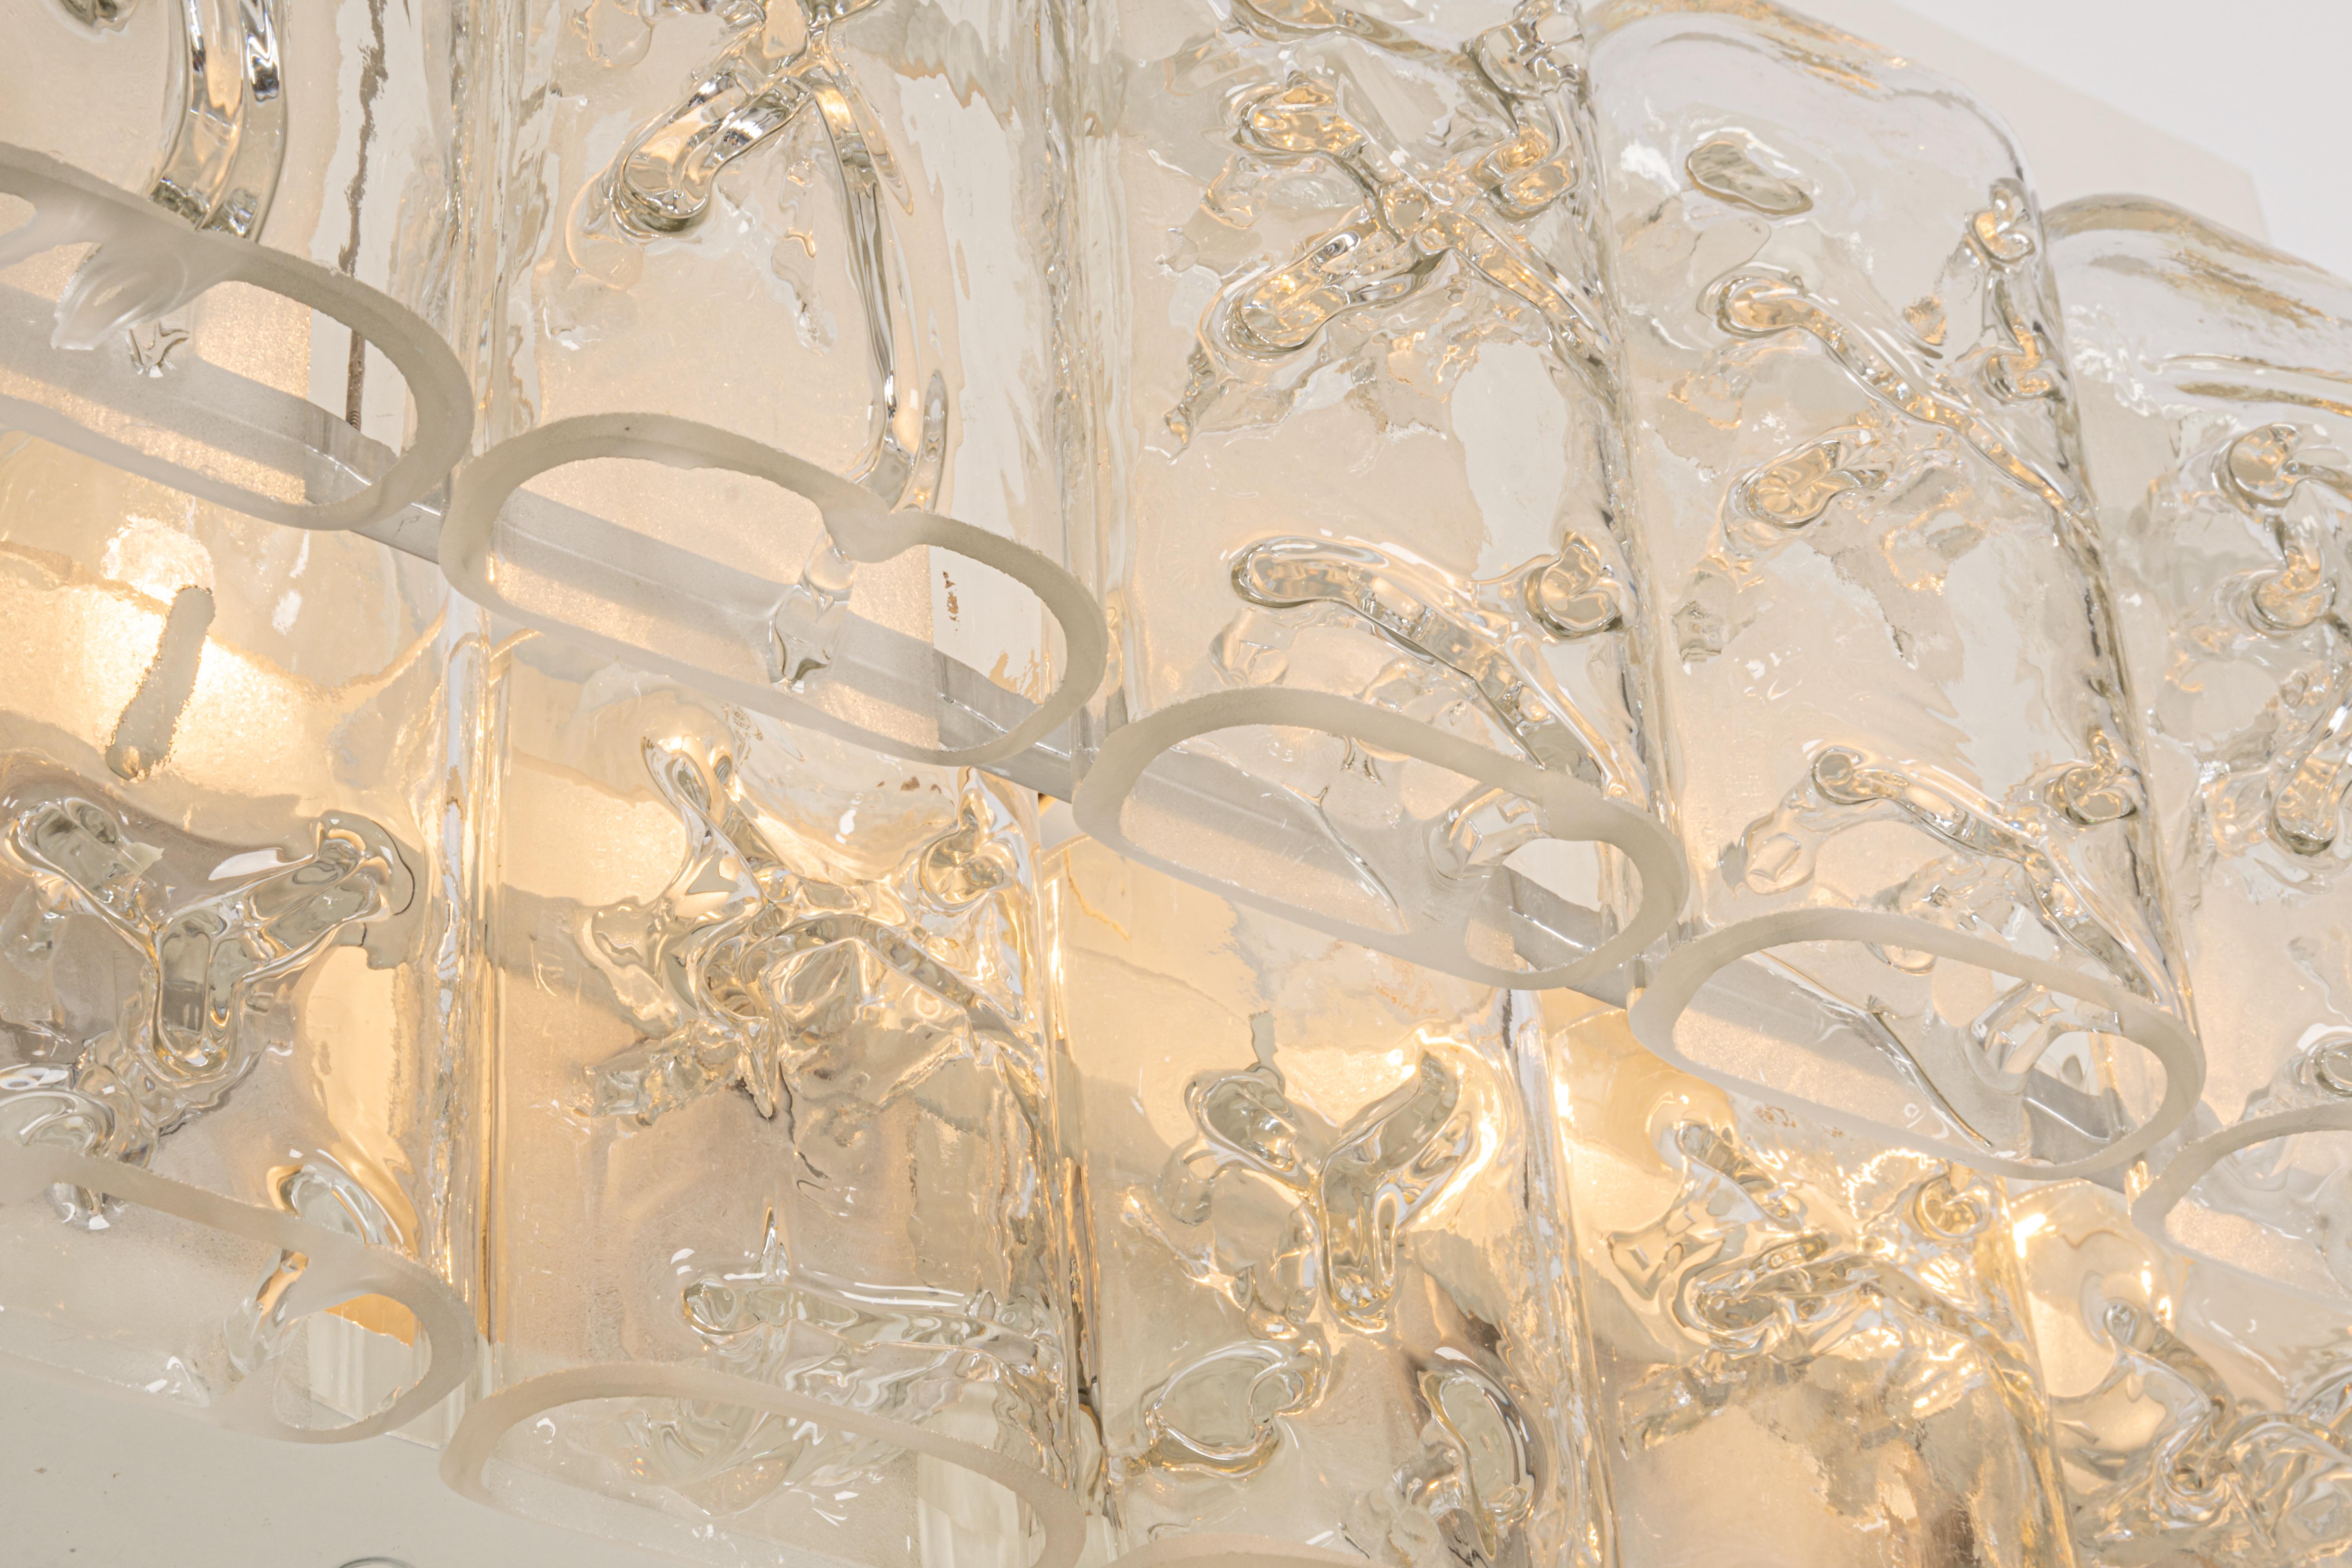 Ein Paar große Wandleuchten aus Chrom und Muranoglas, hergestellt von Doria Leuchten, Deutschland, ca. 1960-1969.
Hochwertig und in sehr gutem Zustand. Gereinigt, gut verkabelt und einsatzbereit.

Jede Leuchte benötigt 4 x E27 Standard-Glühbirnen